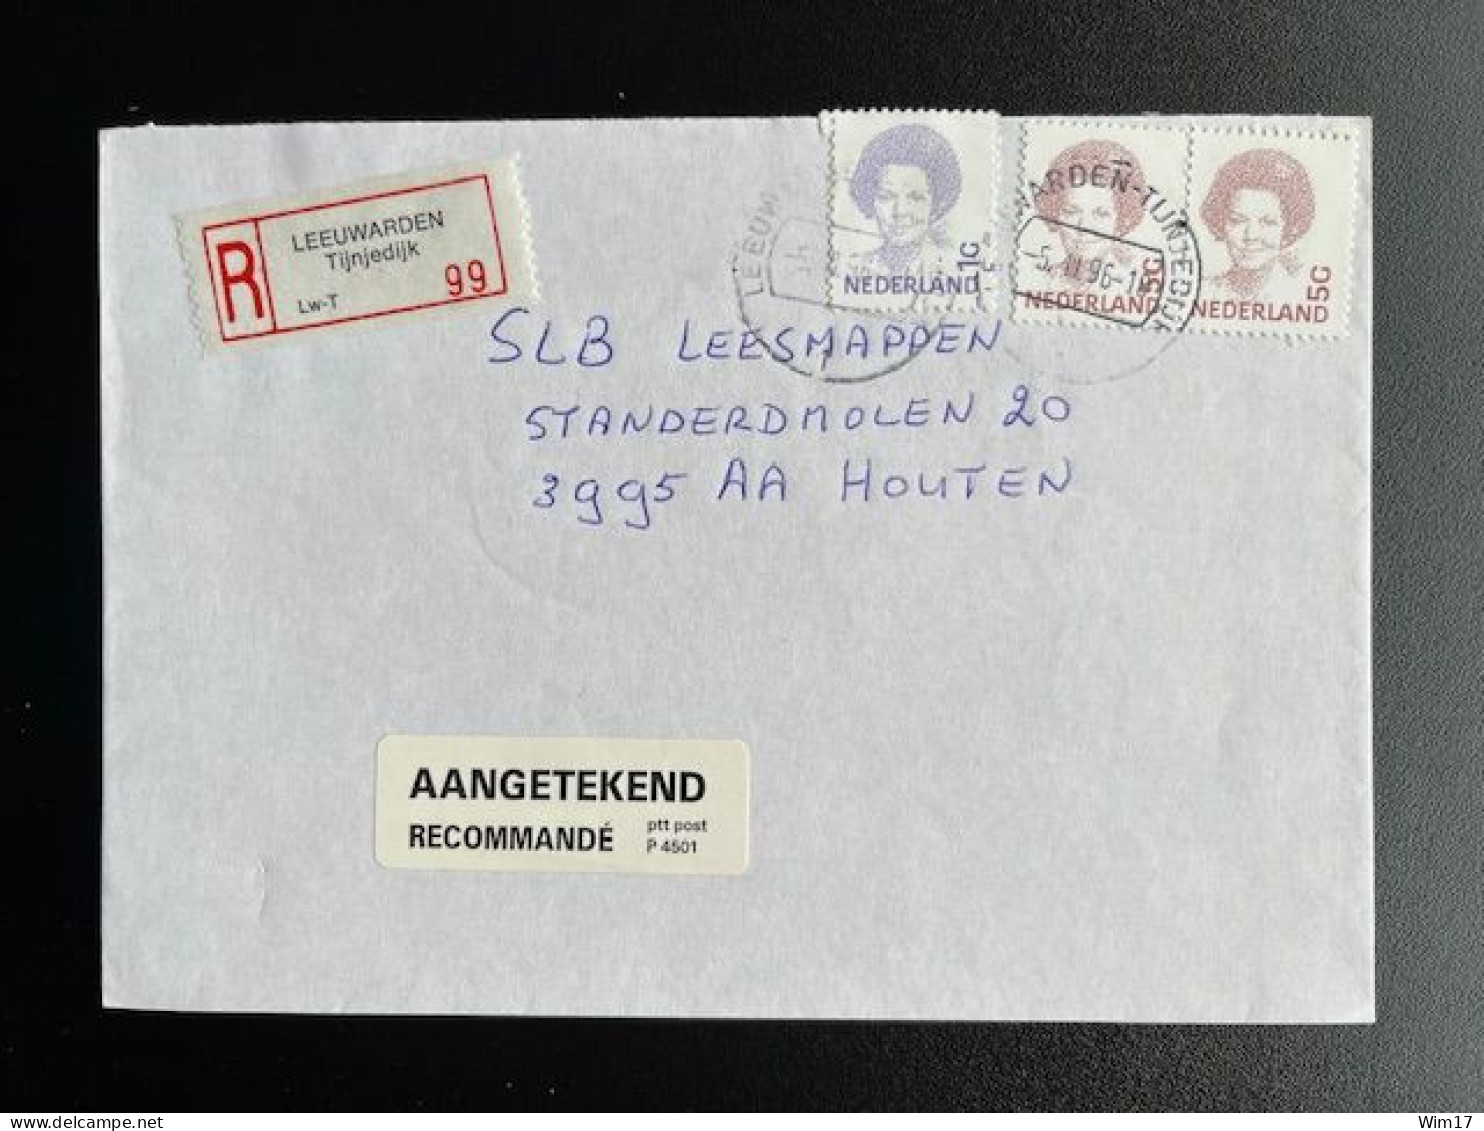 NETHERLANDS 1996 REGISTERED LETTER LEEUWARDEN TIJNJEDIJK TO HOUTEN 05-03-1996 NEDERLAND AANGETEKEND - Lettres & Documents